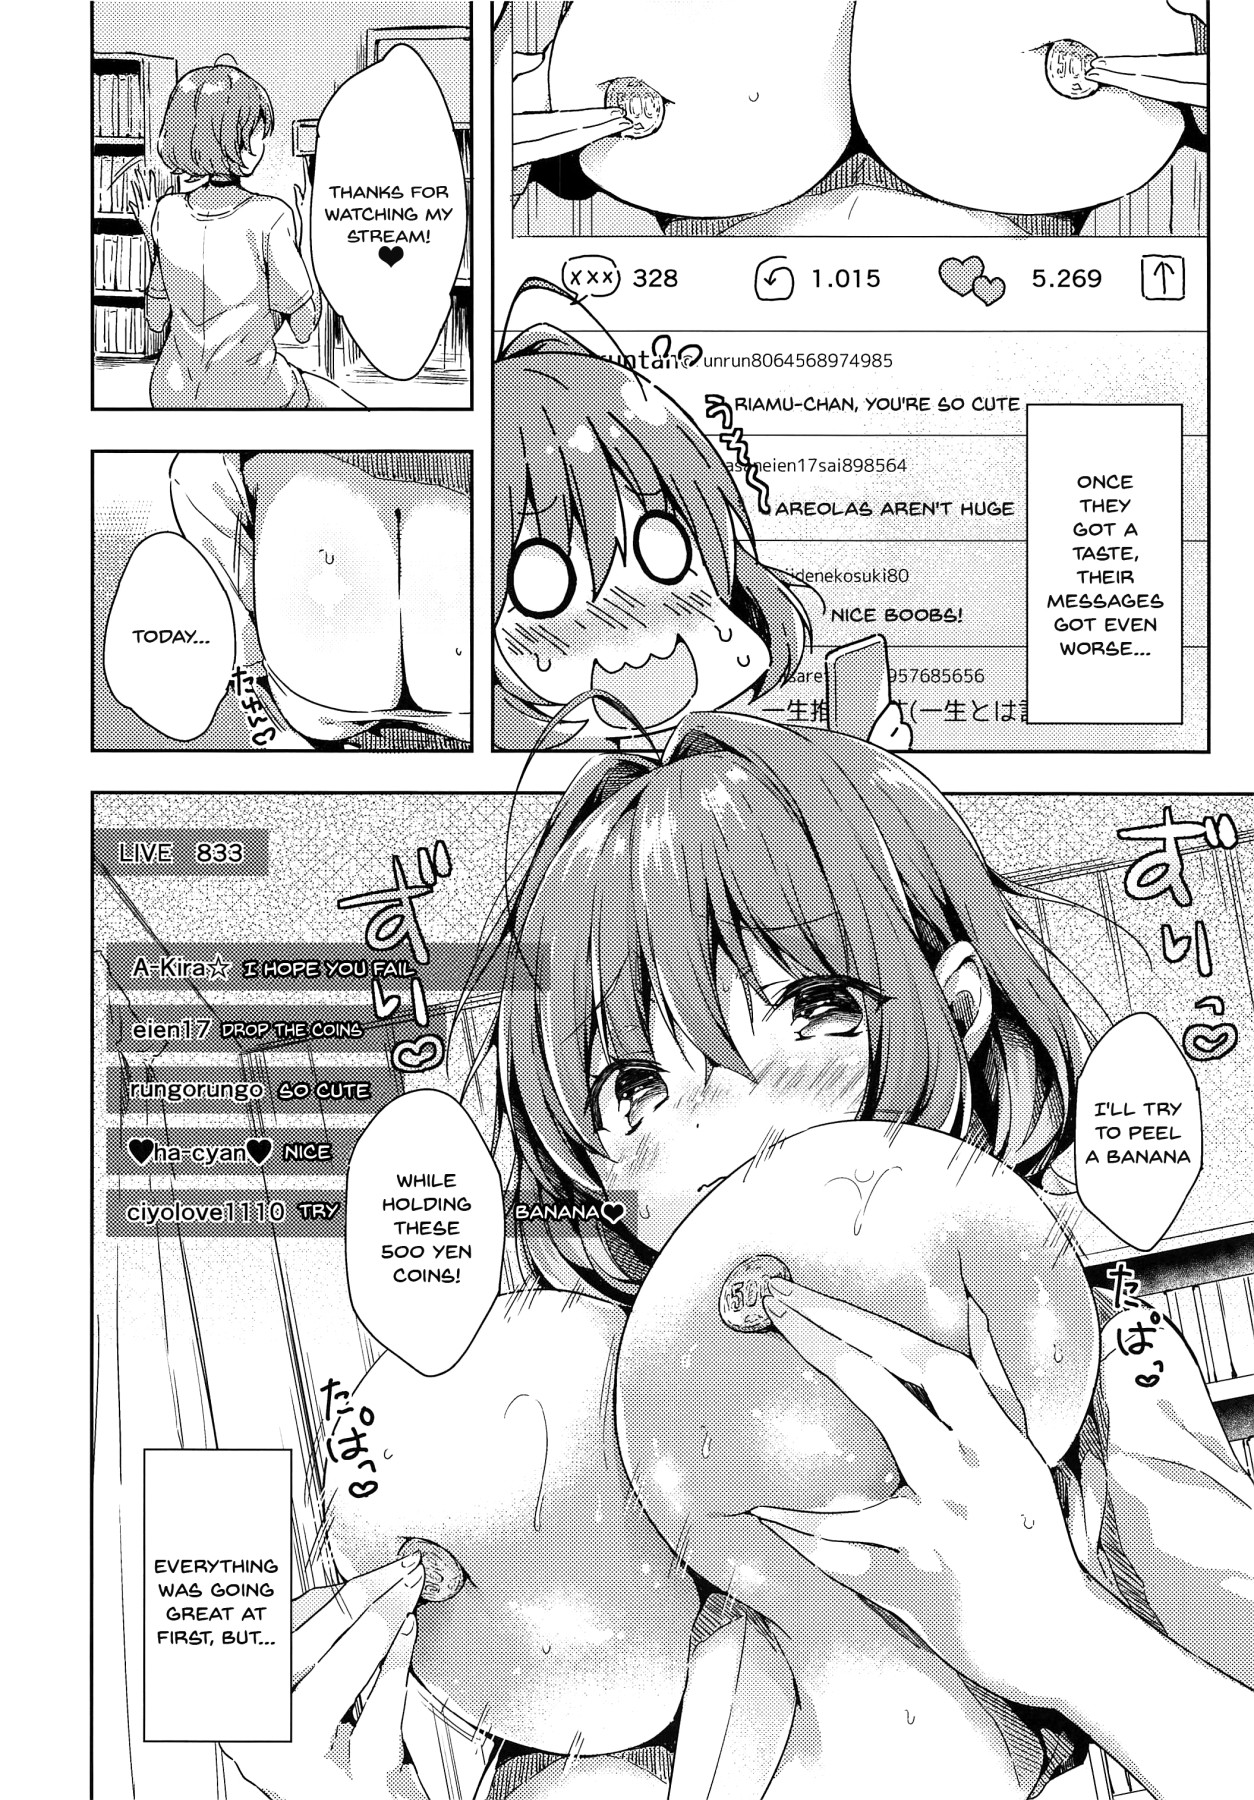 hentai manga Riamu-chan's Sex Proof